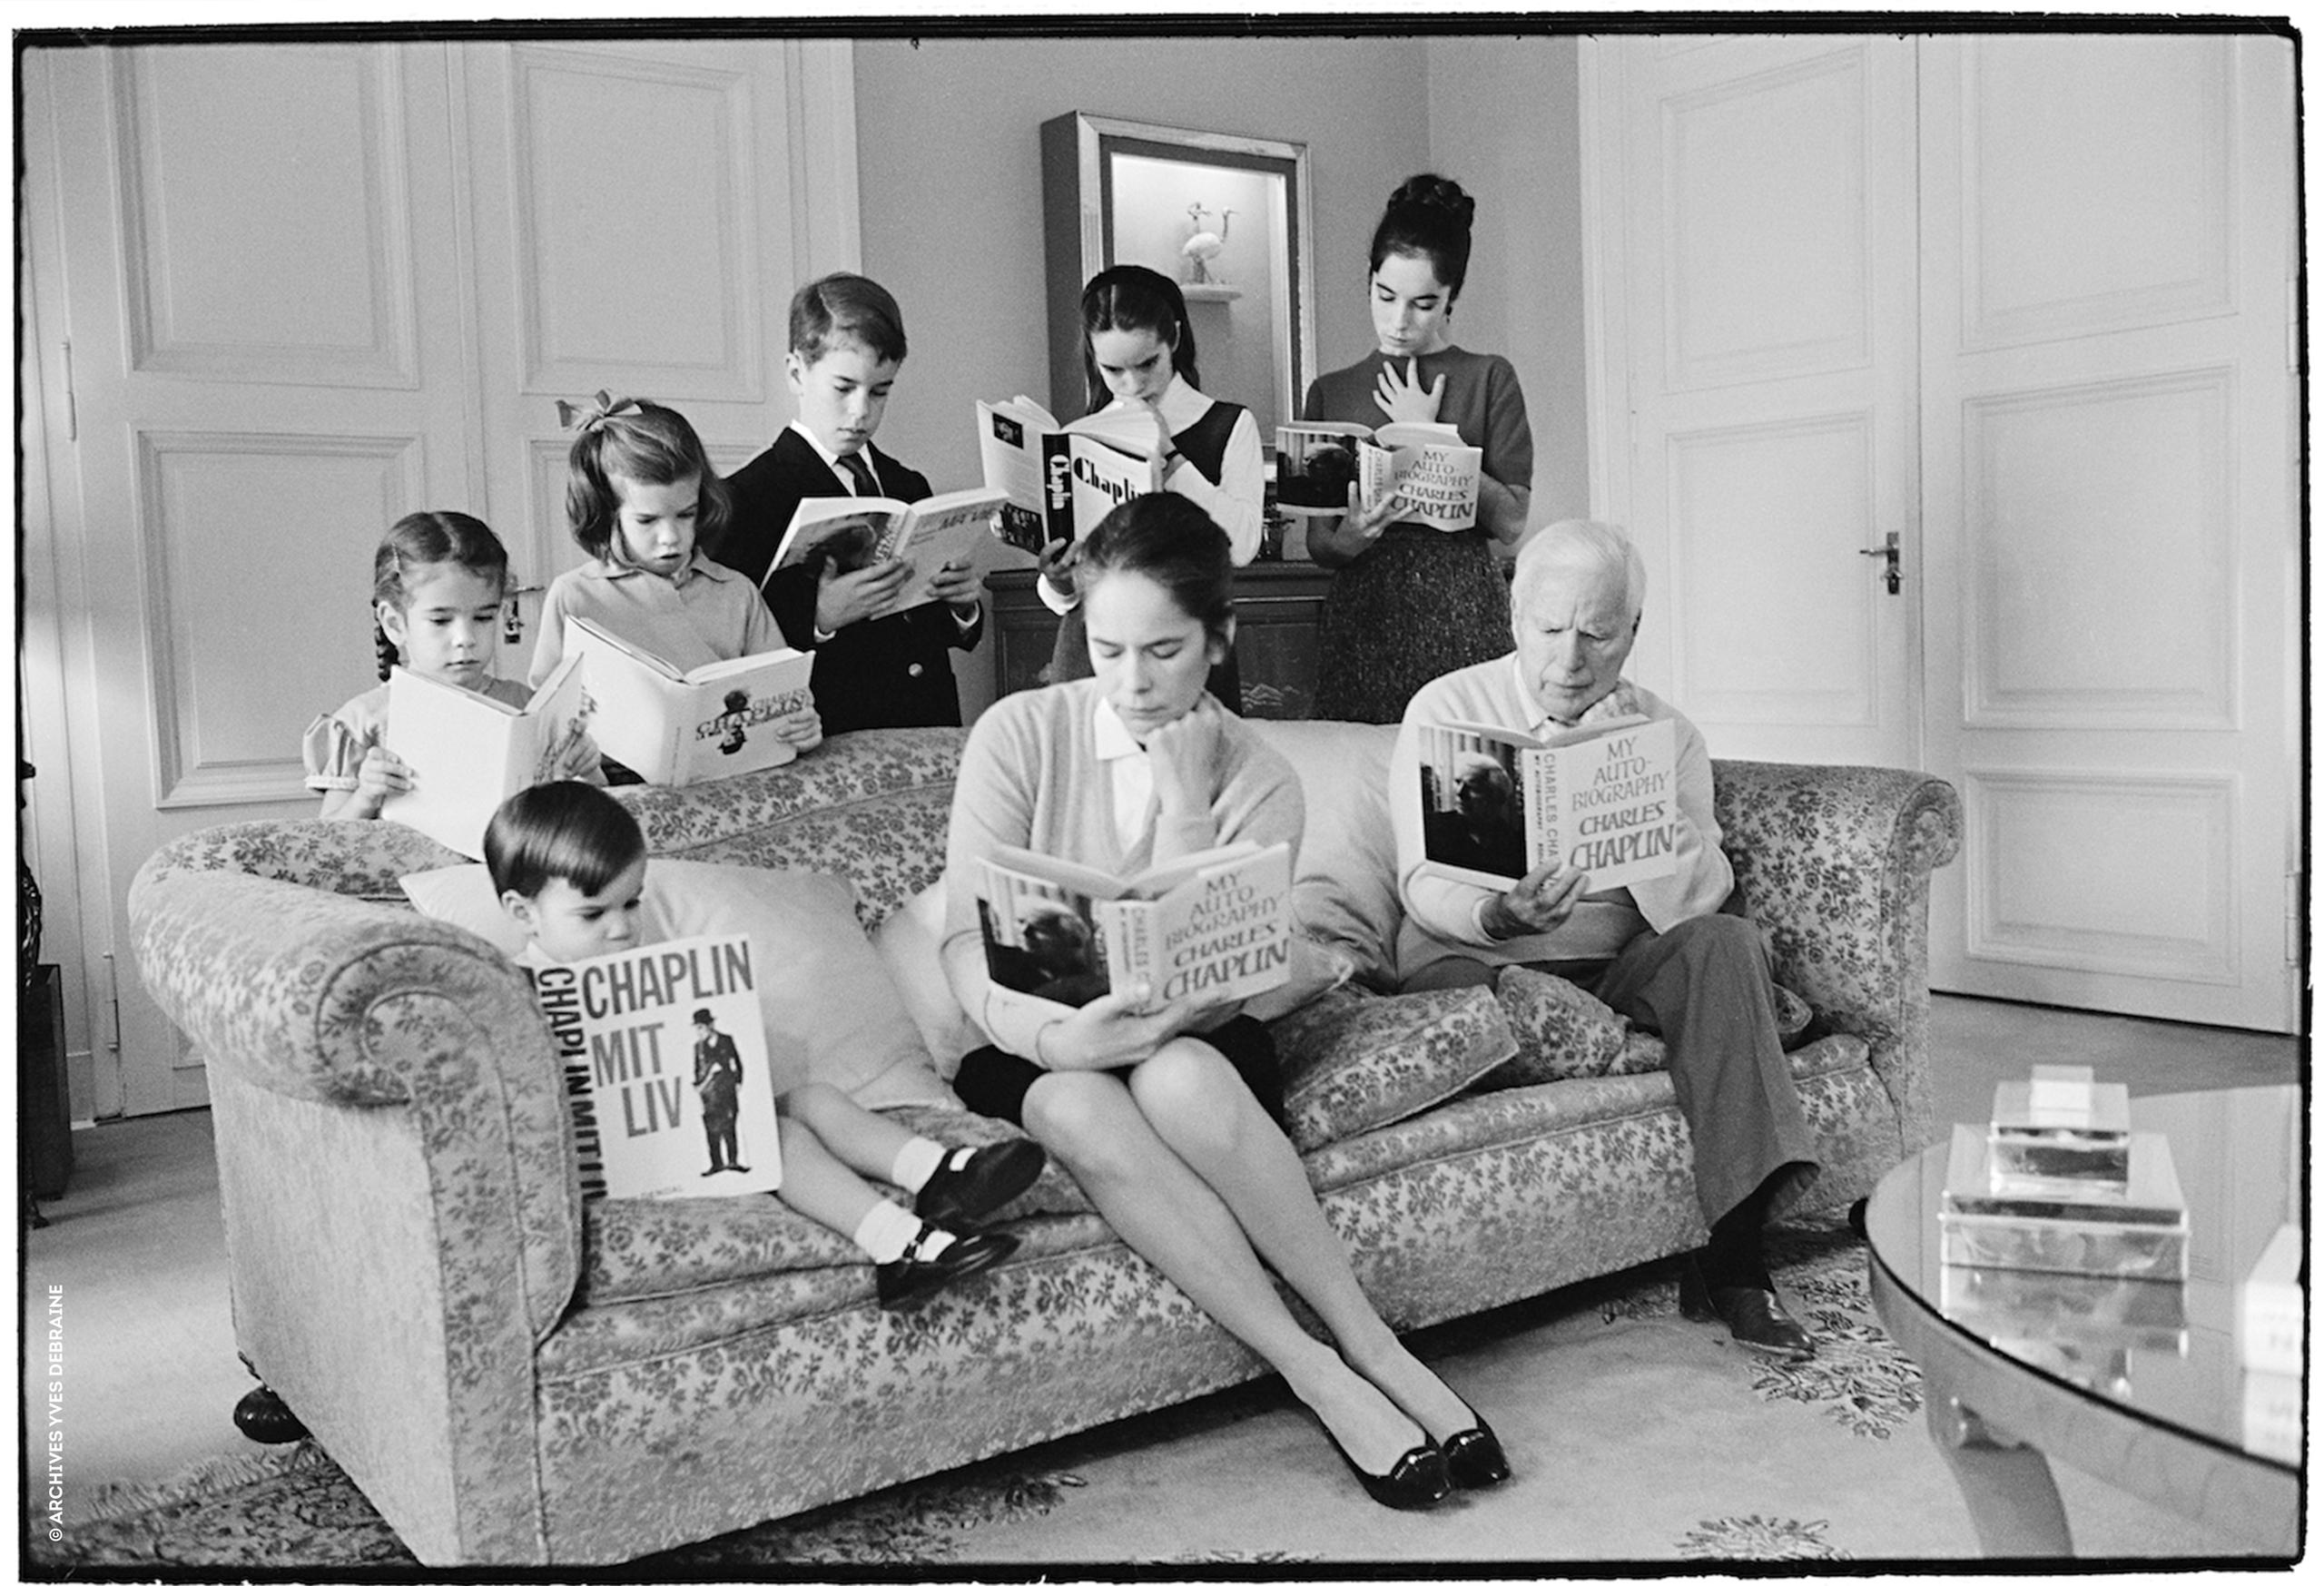 La familia Chaplin posa con libros ebn las manos